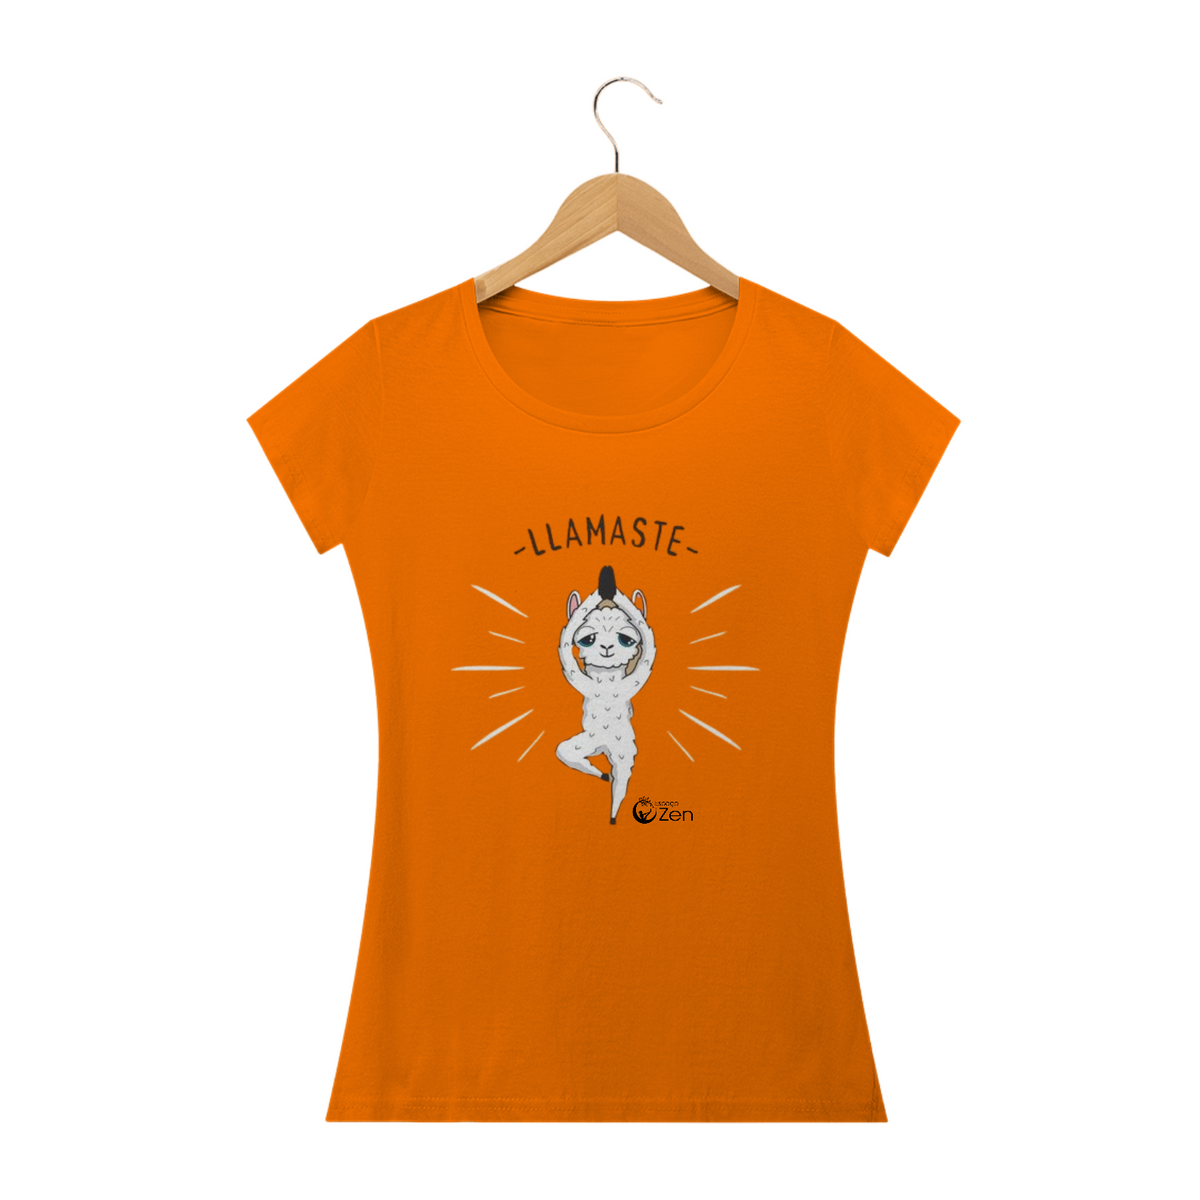 Nome do produto: Llamaste - Espaço Zen - Camisa Fem.